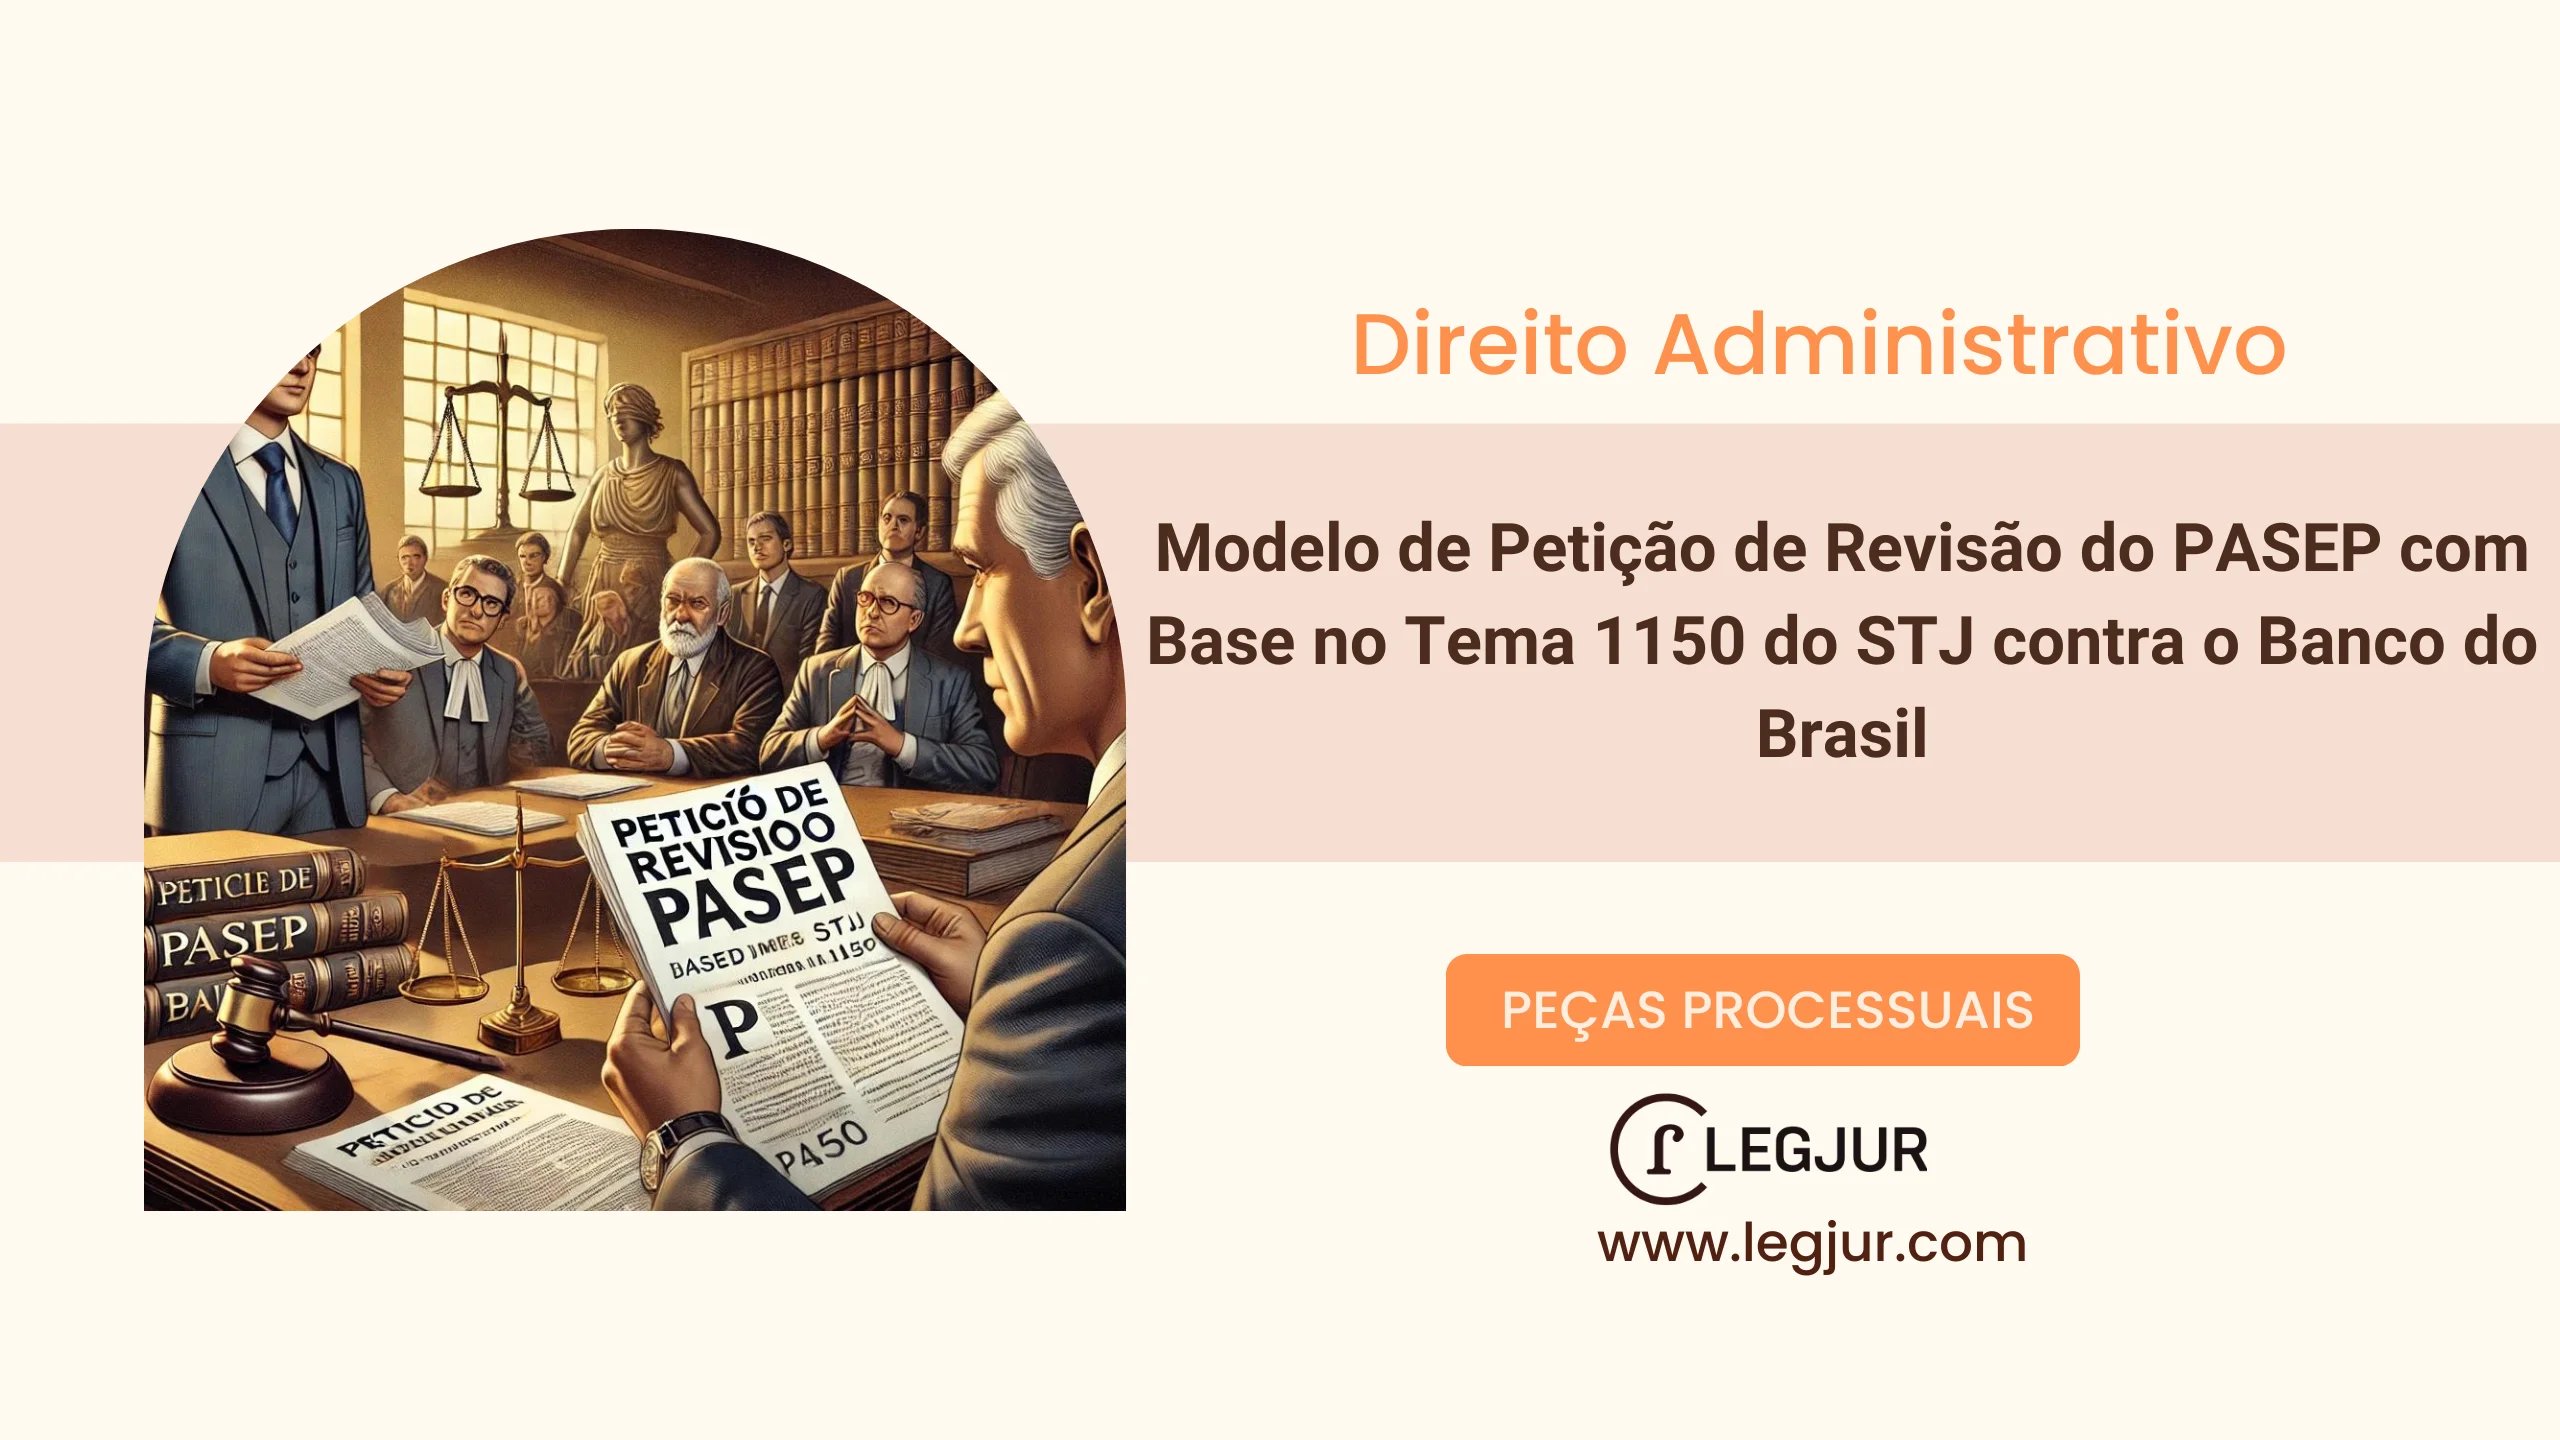 Modelo de Petição de Revisão do PASEP com Base no Tema 1150 do STJ contra o Banco do Brasil